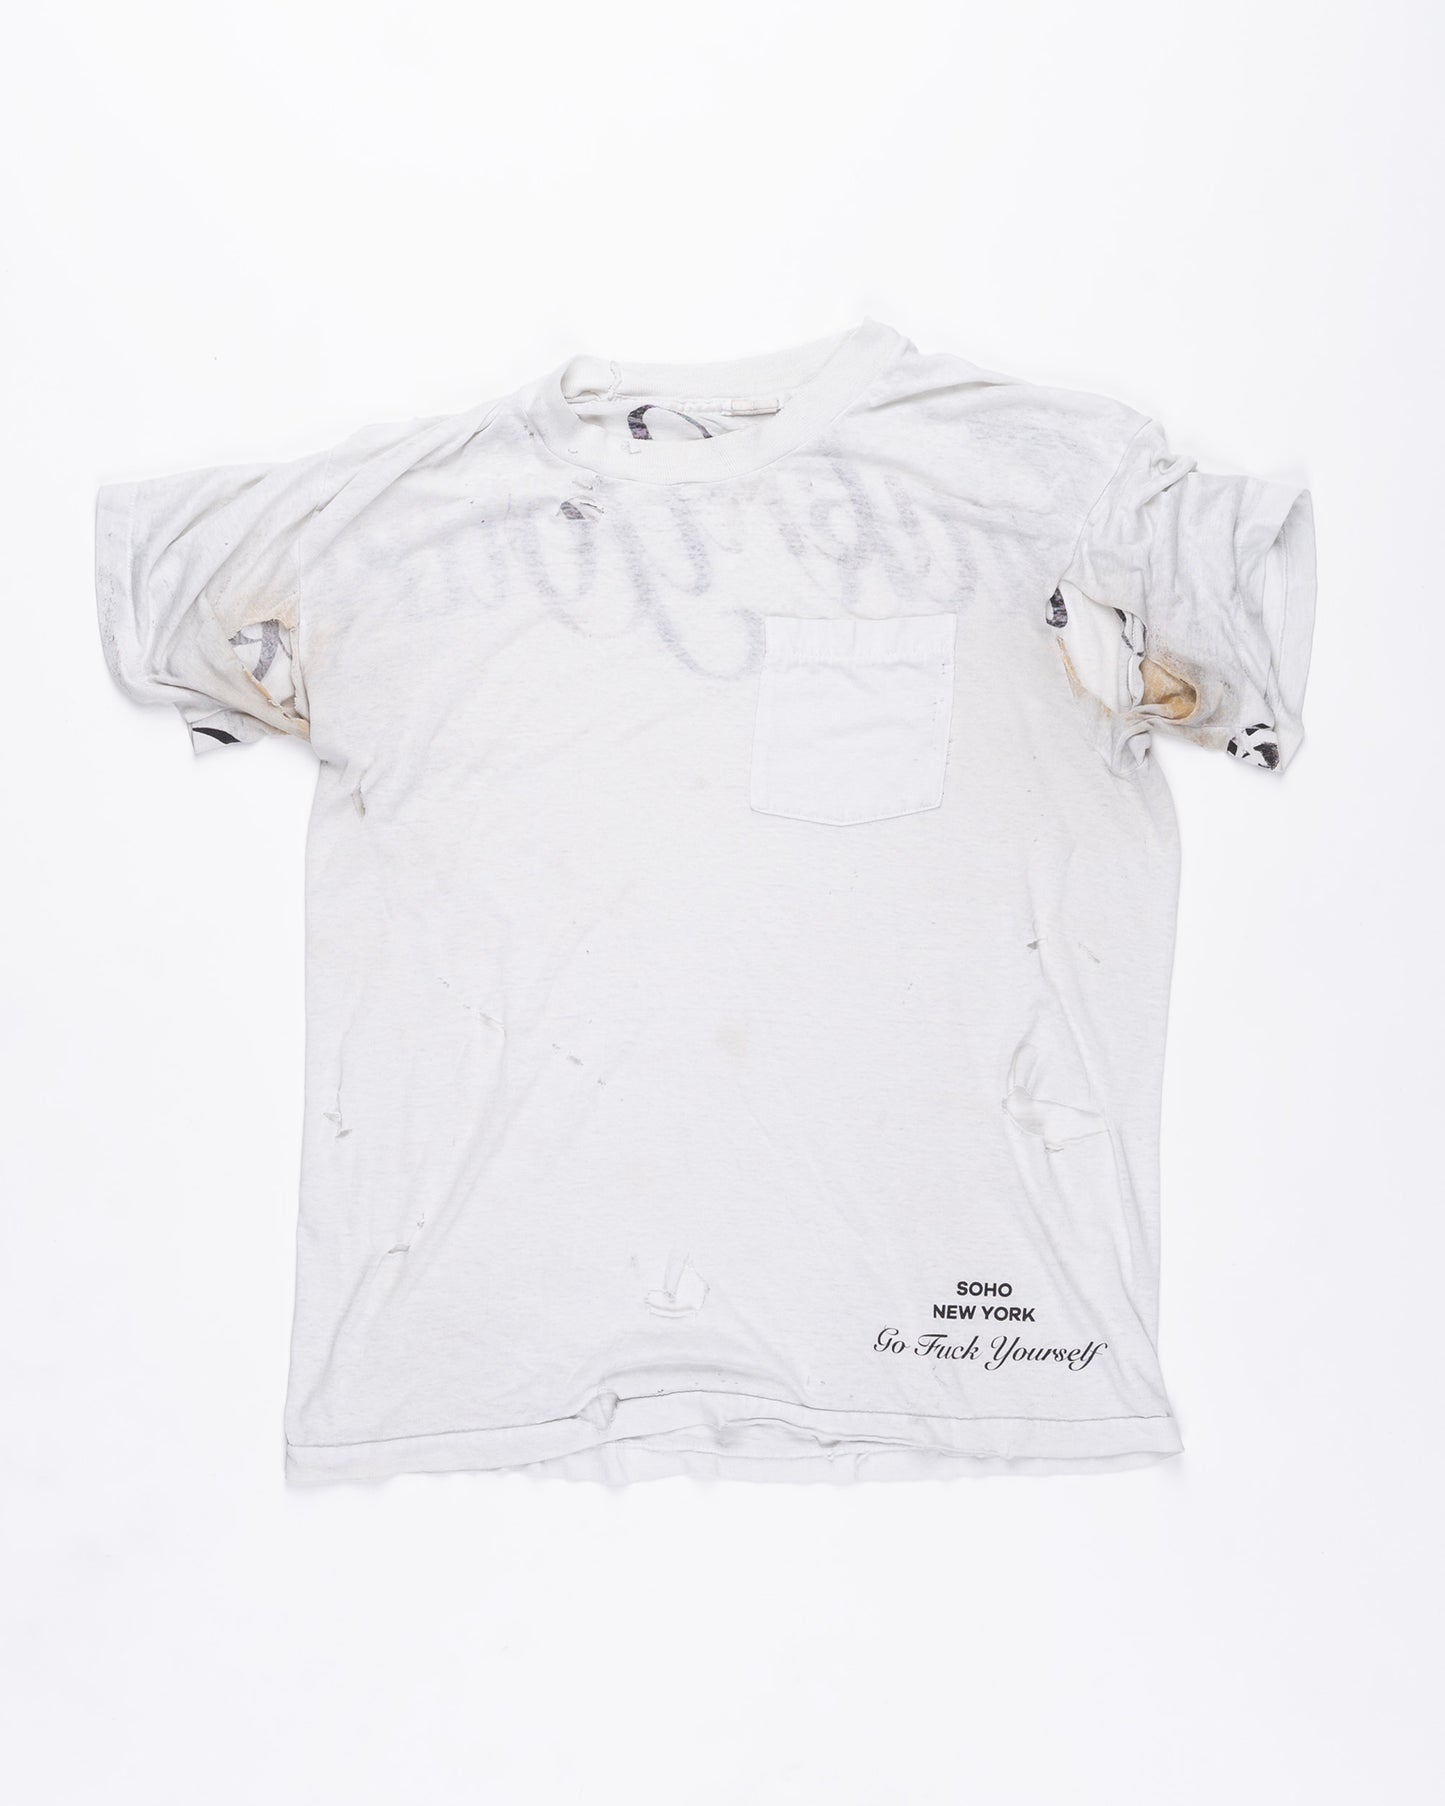 White Thrashed T-Shirt Size: Large